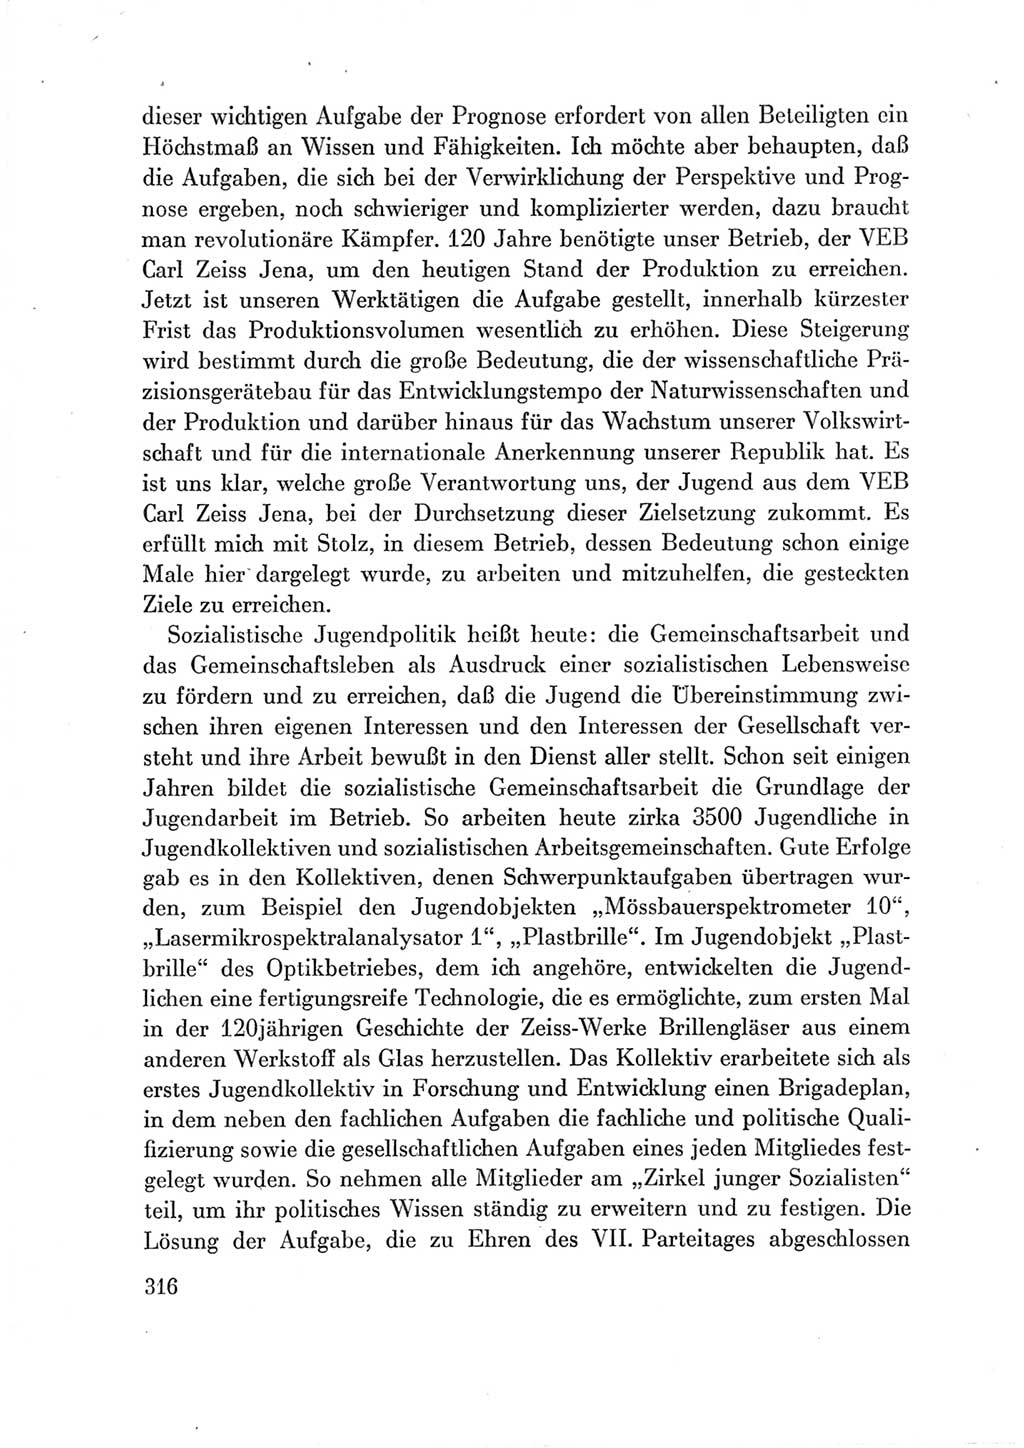 Protokoll der Verhandlungen des Ⅶ. Parteitages der Sozialistischen Einheitspartei Deutschlands (SED) [Deutsche Demokratische Republik (DDR)] 1967, Band Ⅲ, Seite 316 (Prot. Verh. Ⅶ. PT SED DDR 1967, Bd. Ⅲ, S. 316)